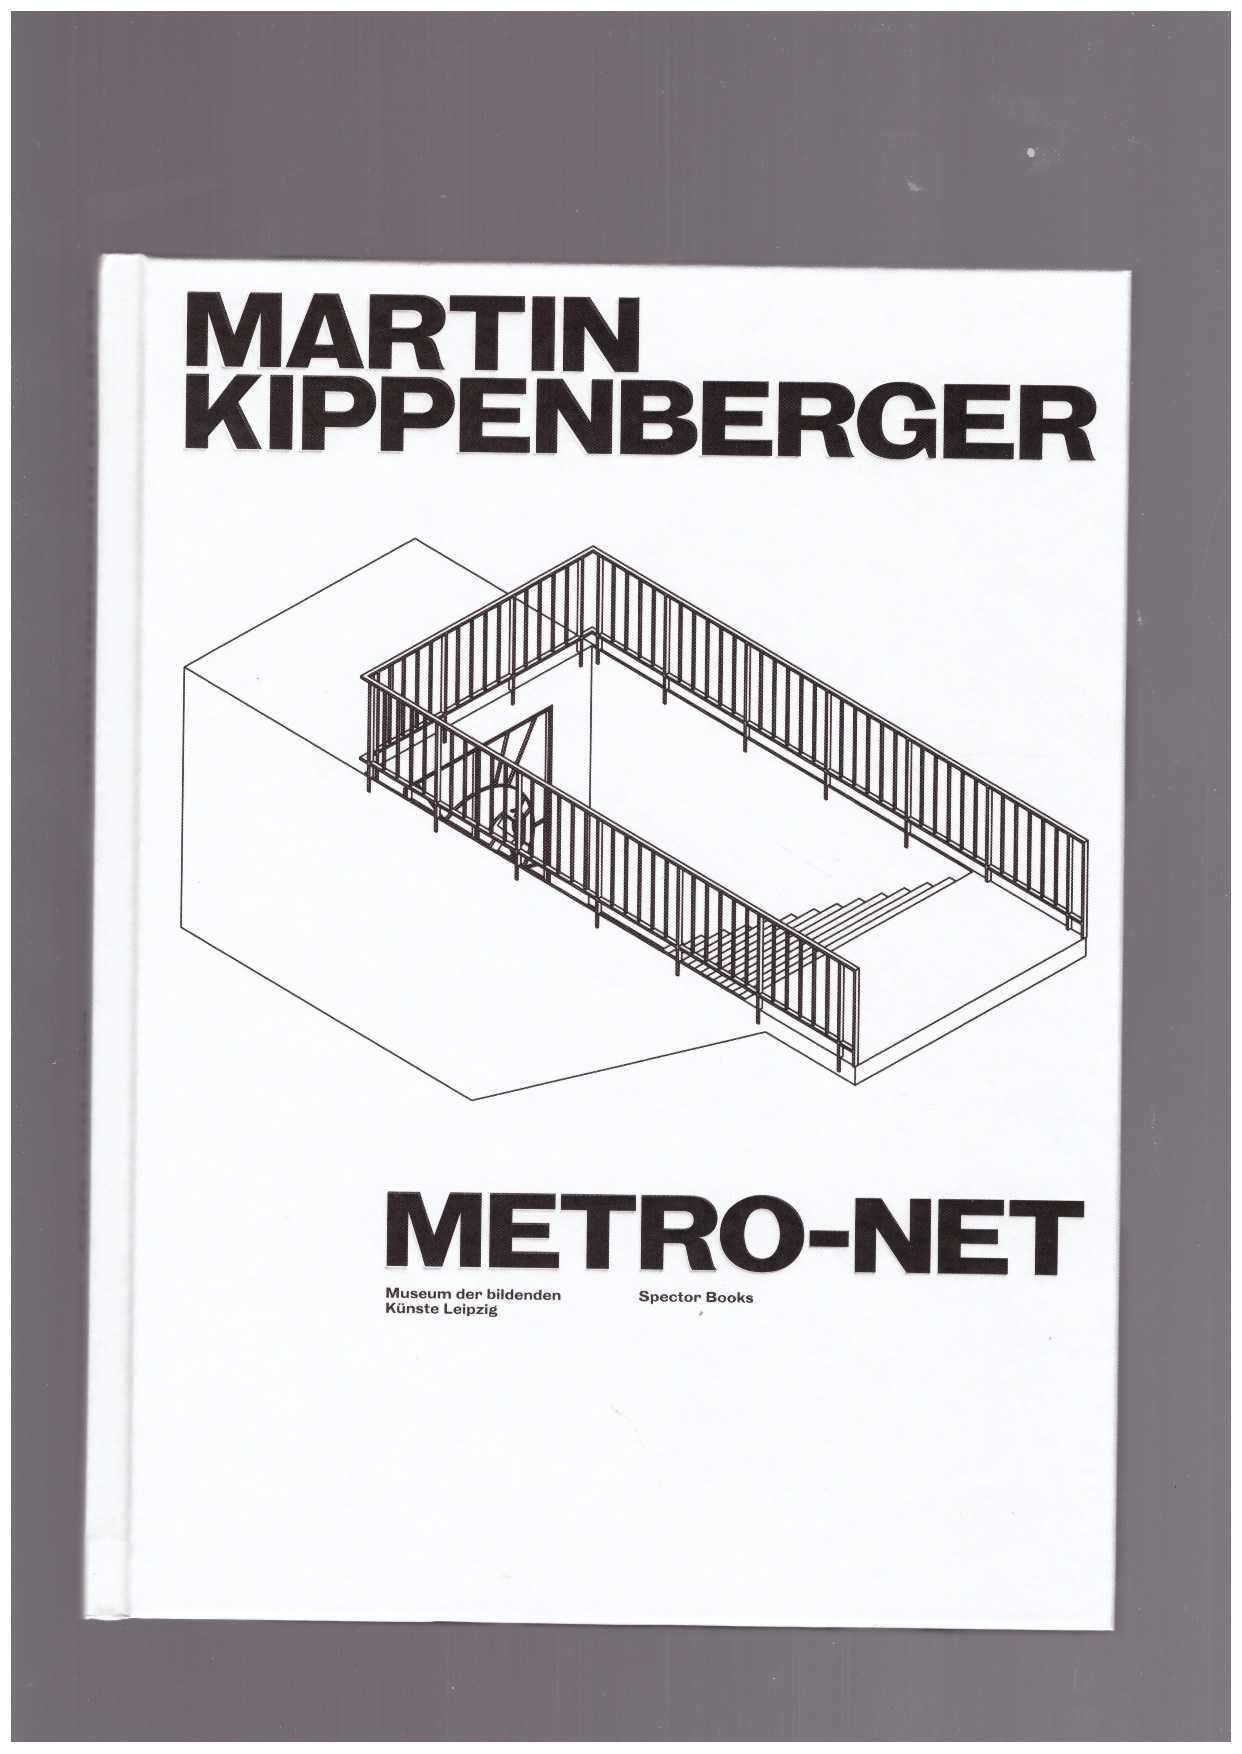 Museum der bildenden Künste Leipzig (ed) - Martin Kippenberger. Metro-Net